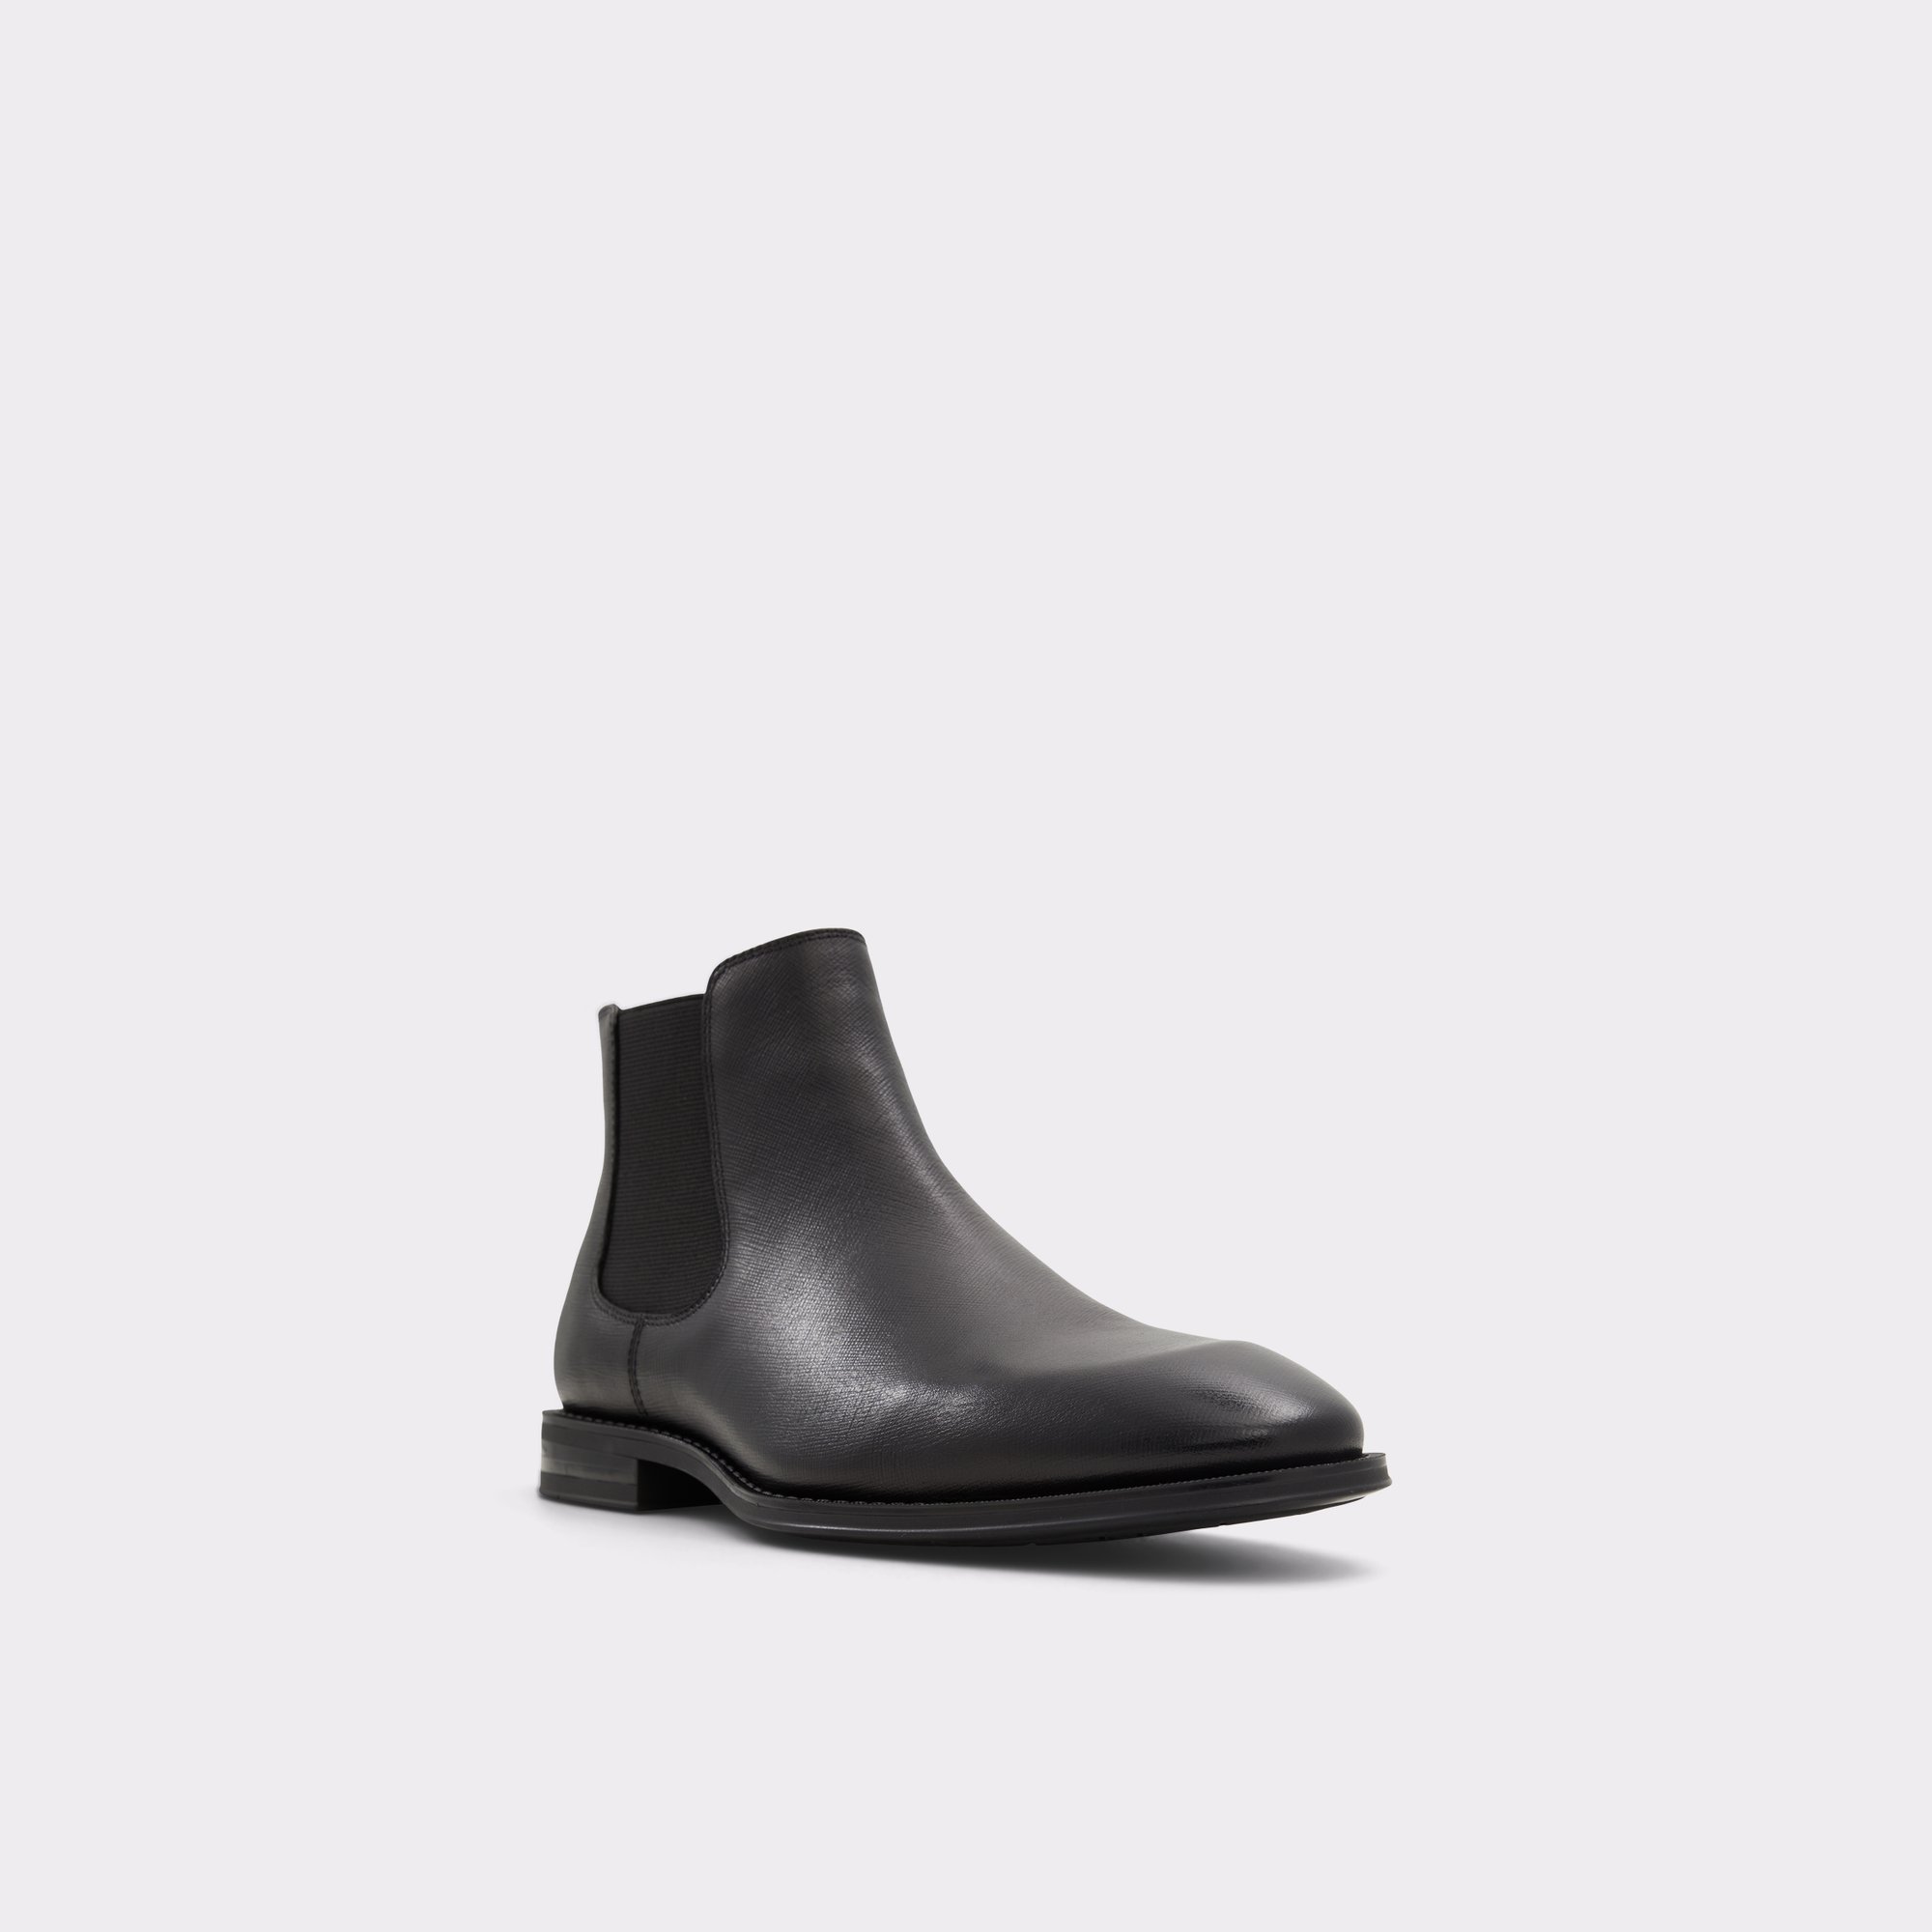 Collier Black Men's Dress boots | ALDO US